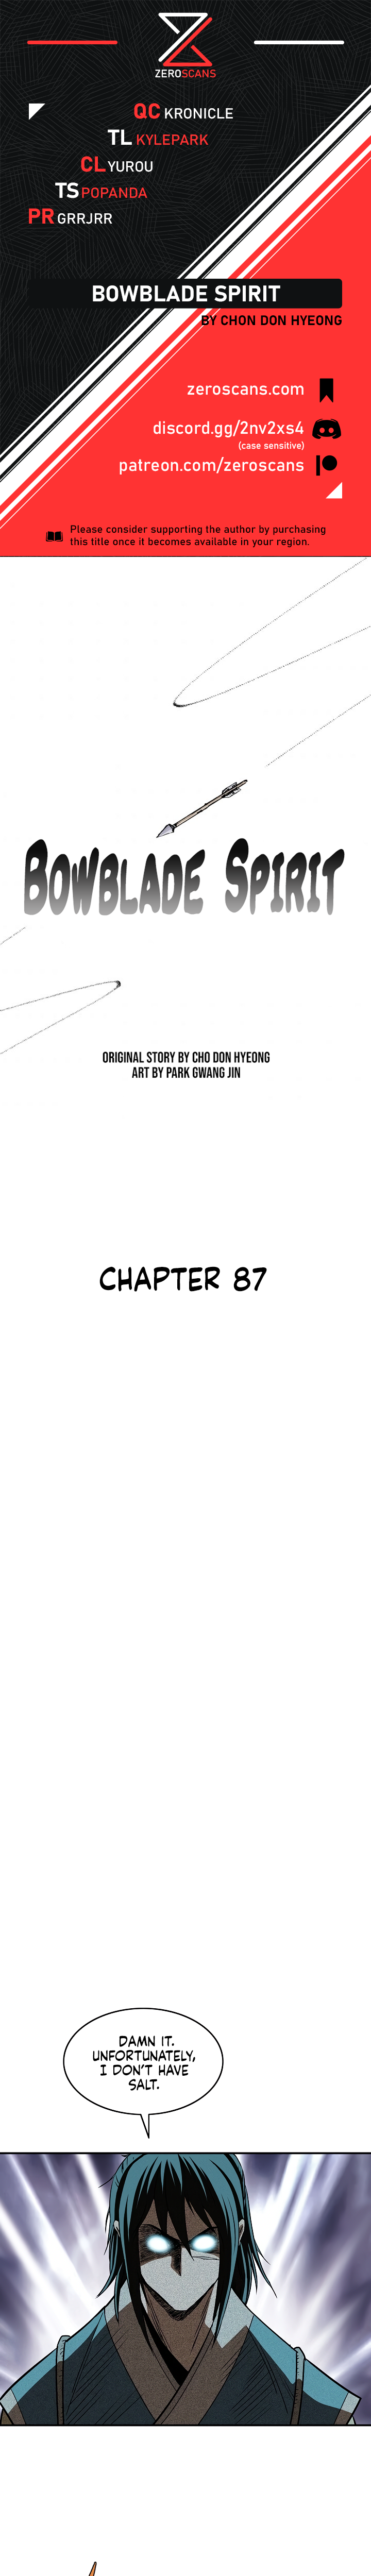 Bowblade Spirit - Chapter 8056 - Image 1